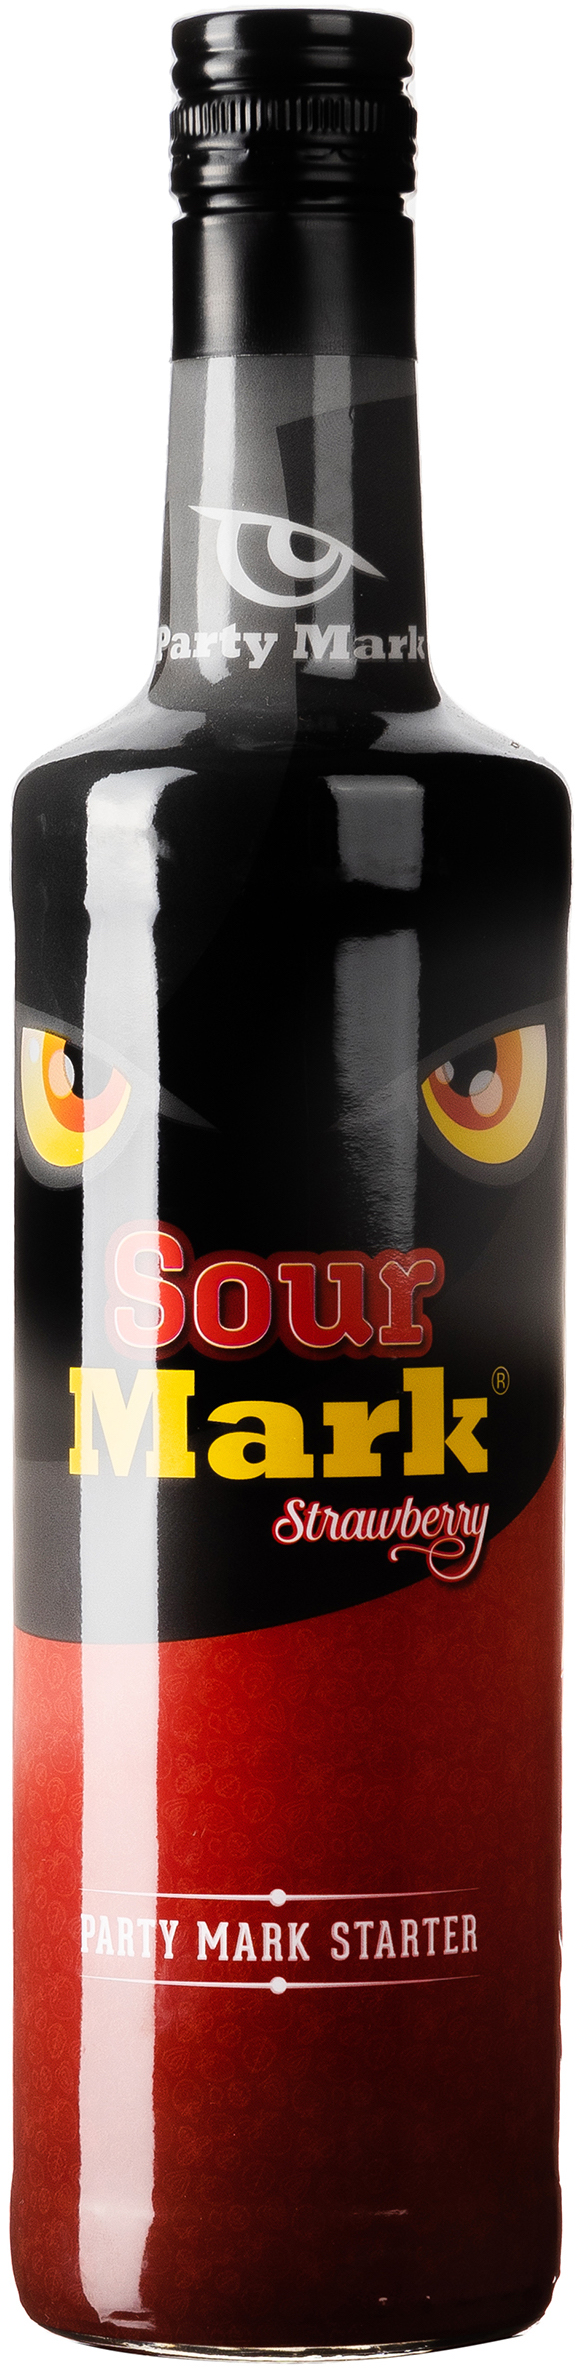 Sour Mark Strawberry 16% vol. 0,7L